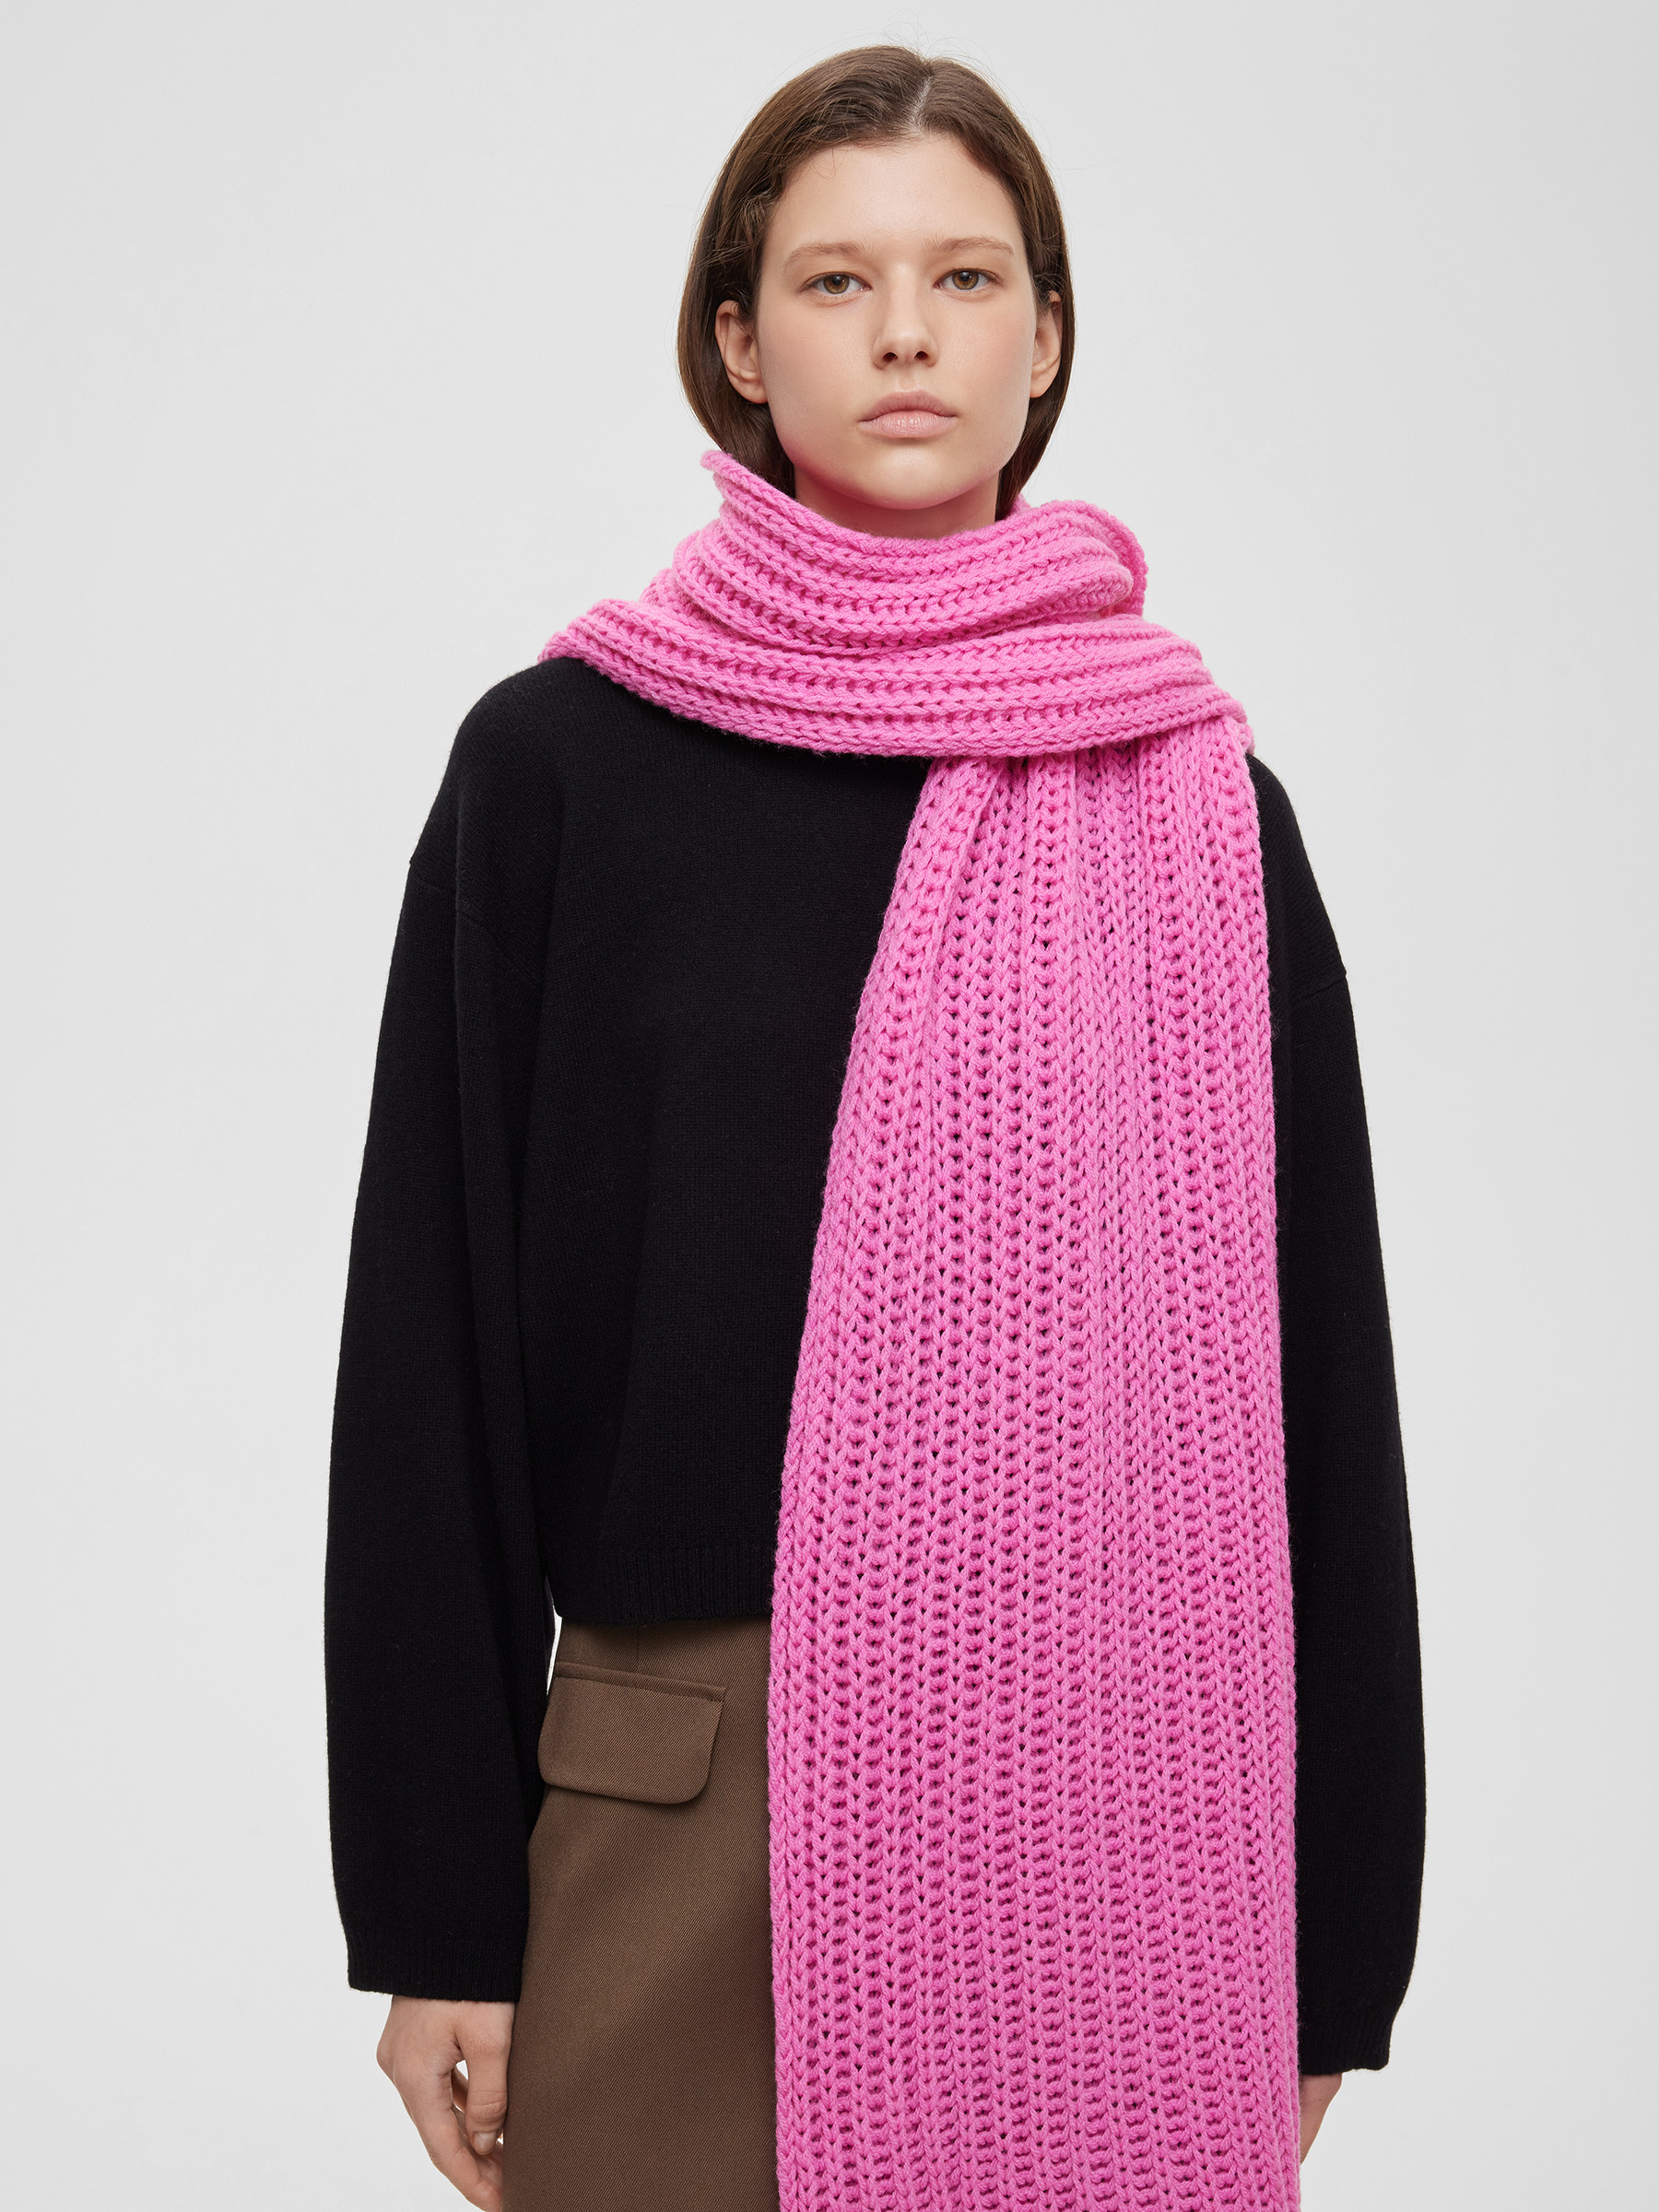 Шарф легкий крупной вязки, цвет – розовая фуксия шарф крупной вязки цвет – серый